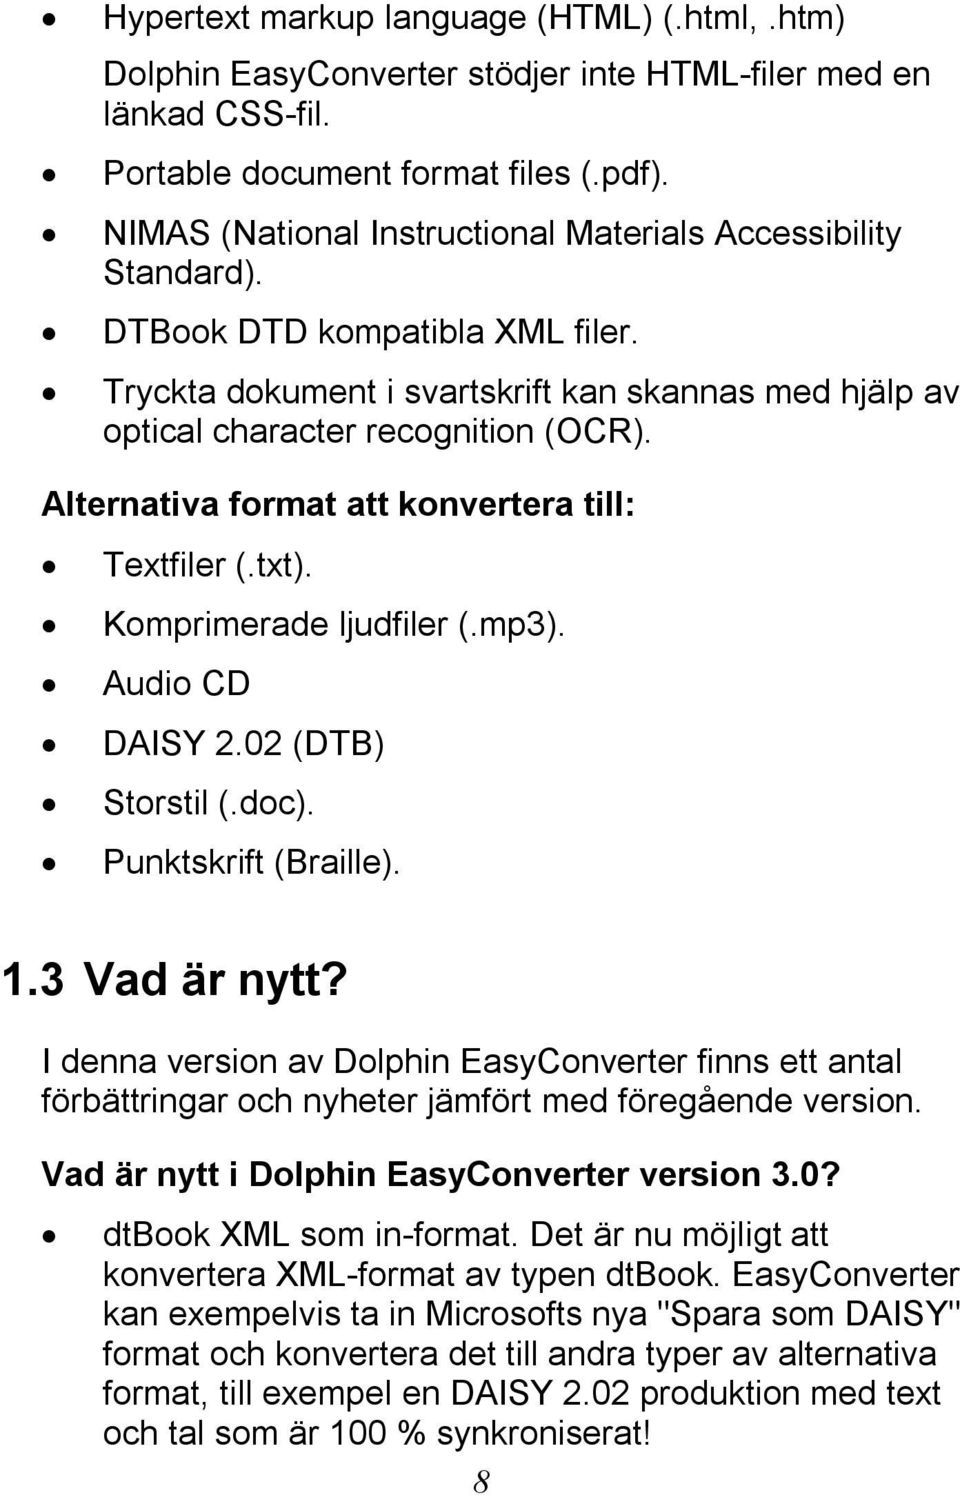 Alternativa format att konvertera till: Textfiler (.txt). Komprimerade ljudfiler (.mp3). Audio CD DAISY 2.02 (DTB) Storstil (.doc). Punktskrift (Braille). 1.3 Vad är nytt?